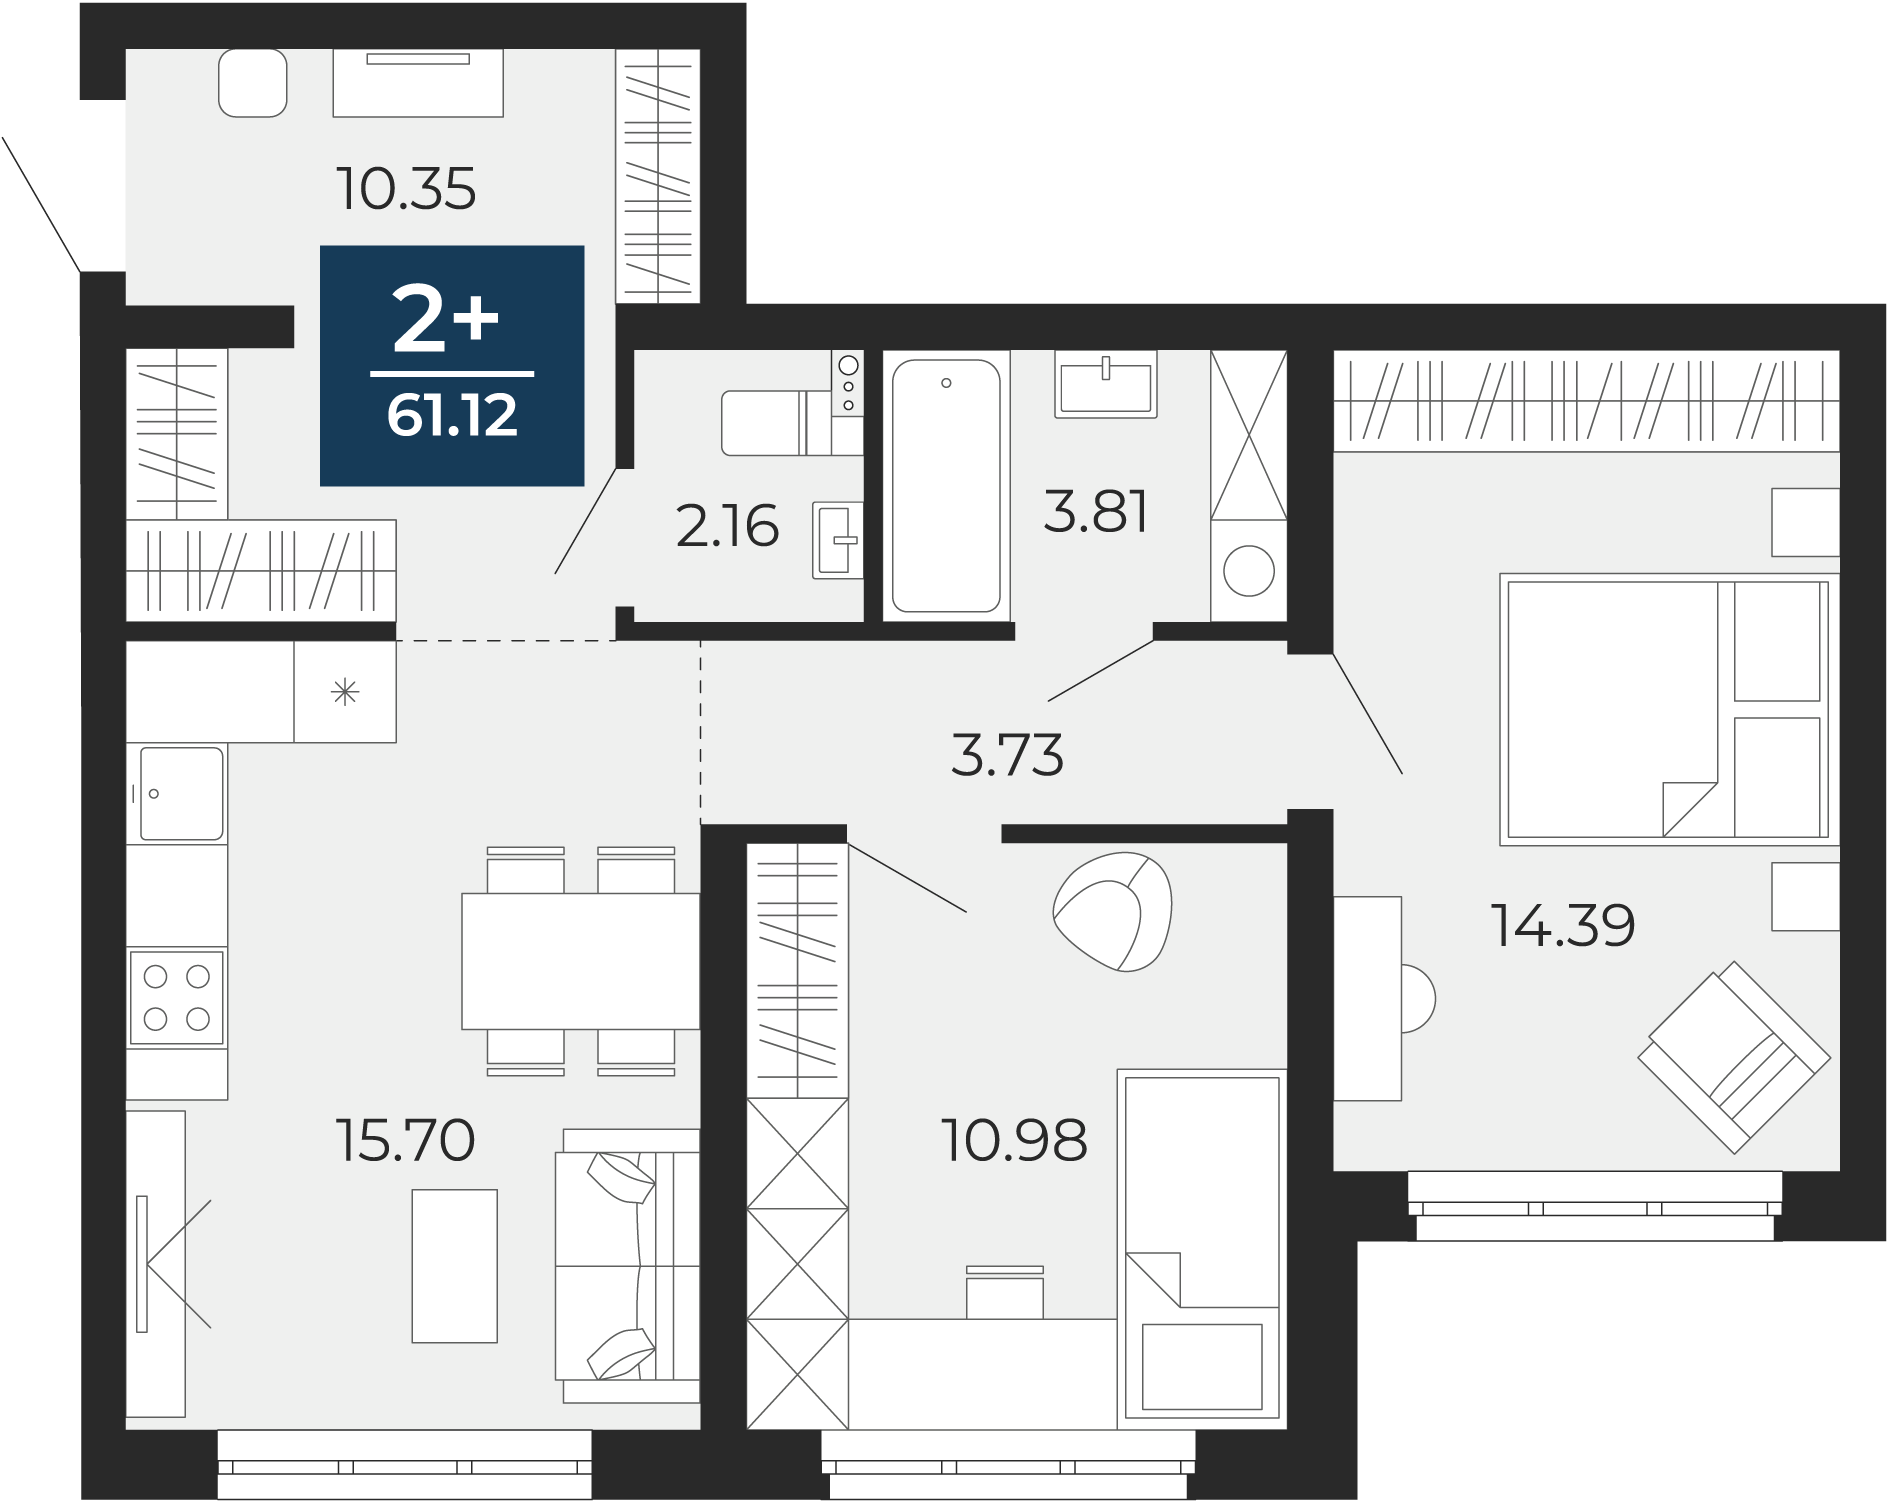 Квартира № 1, 2-комнатная, 61.12 кв. м, 1 этаж